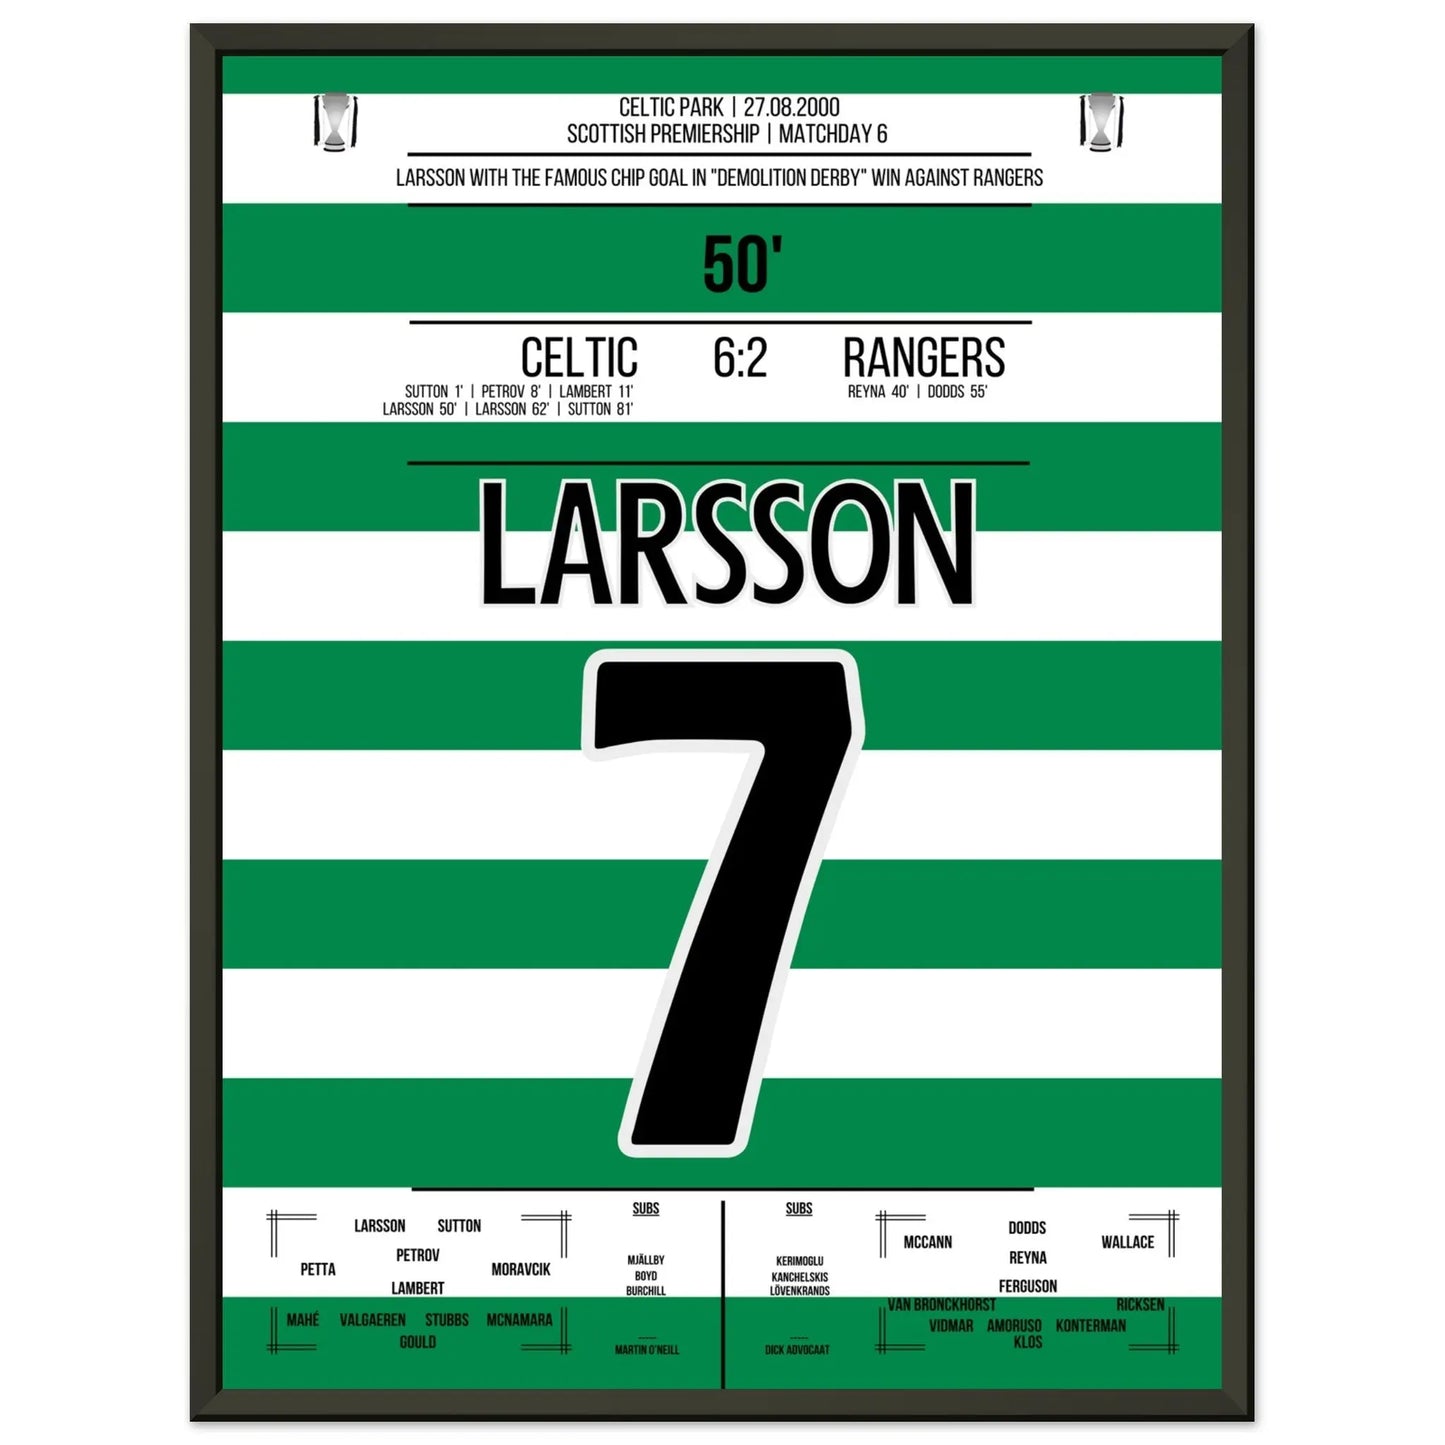 Larsson's legendärer "Chip" im "Demolition Derby" in 2000 45x60-cm-18x24-Schwarzer-Aluminiumrahmen